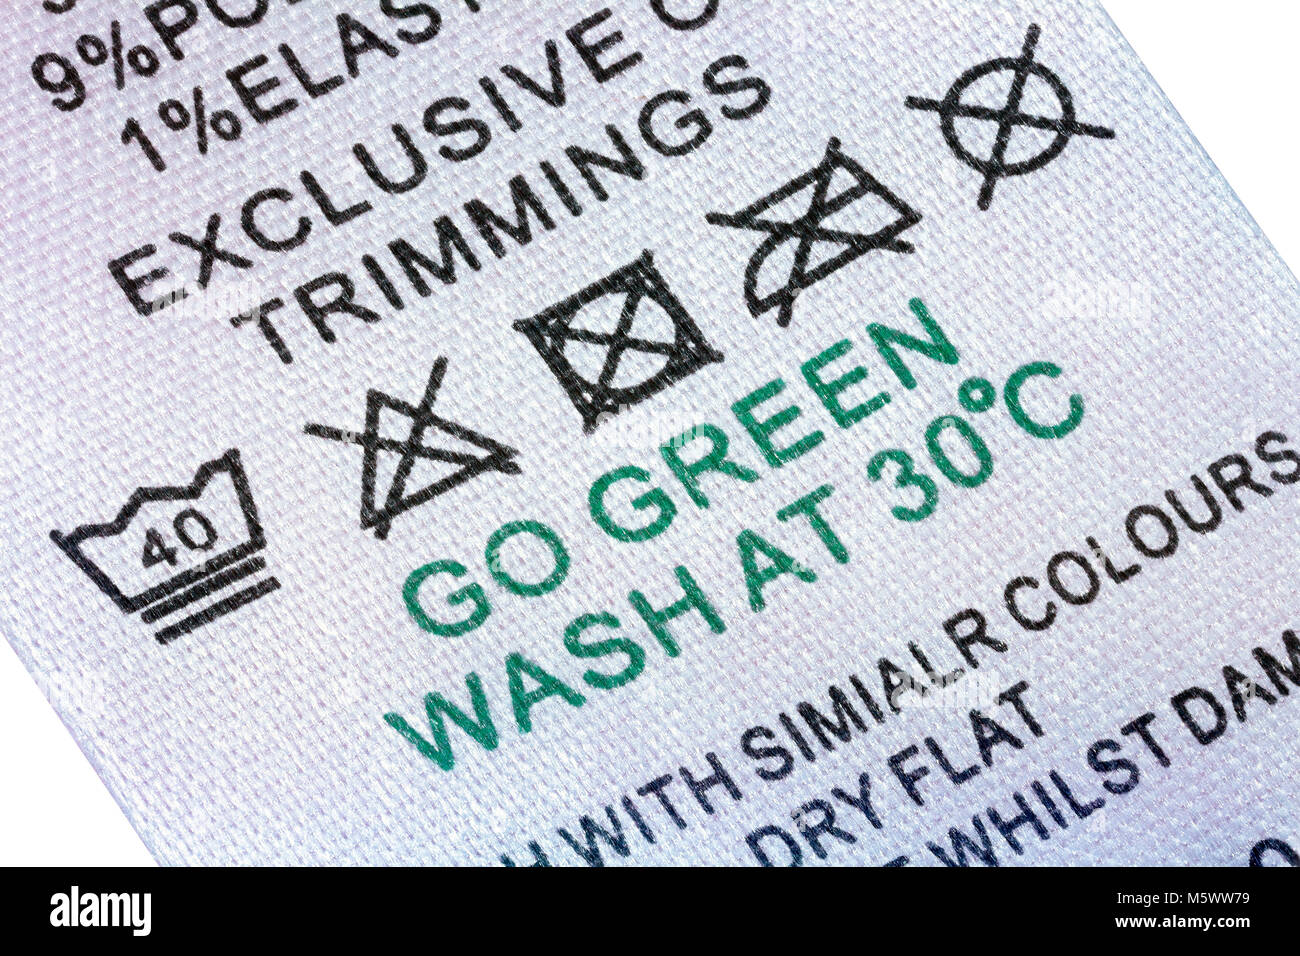 Servicio de lavandería - Servicio de lavado de ropa cuidado de la etiqueta de lavado de 40° ciclo suave, no blanquear, no secar en la secadora, no limpieza en seco y Go Green lavar a 30° Foto de stock